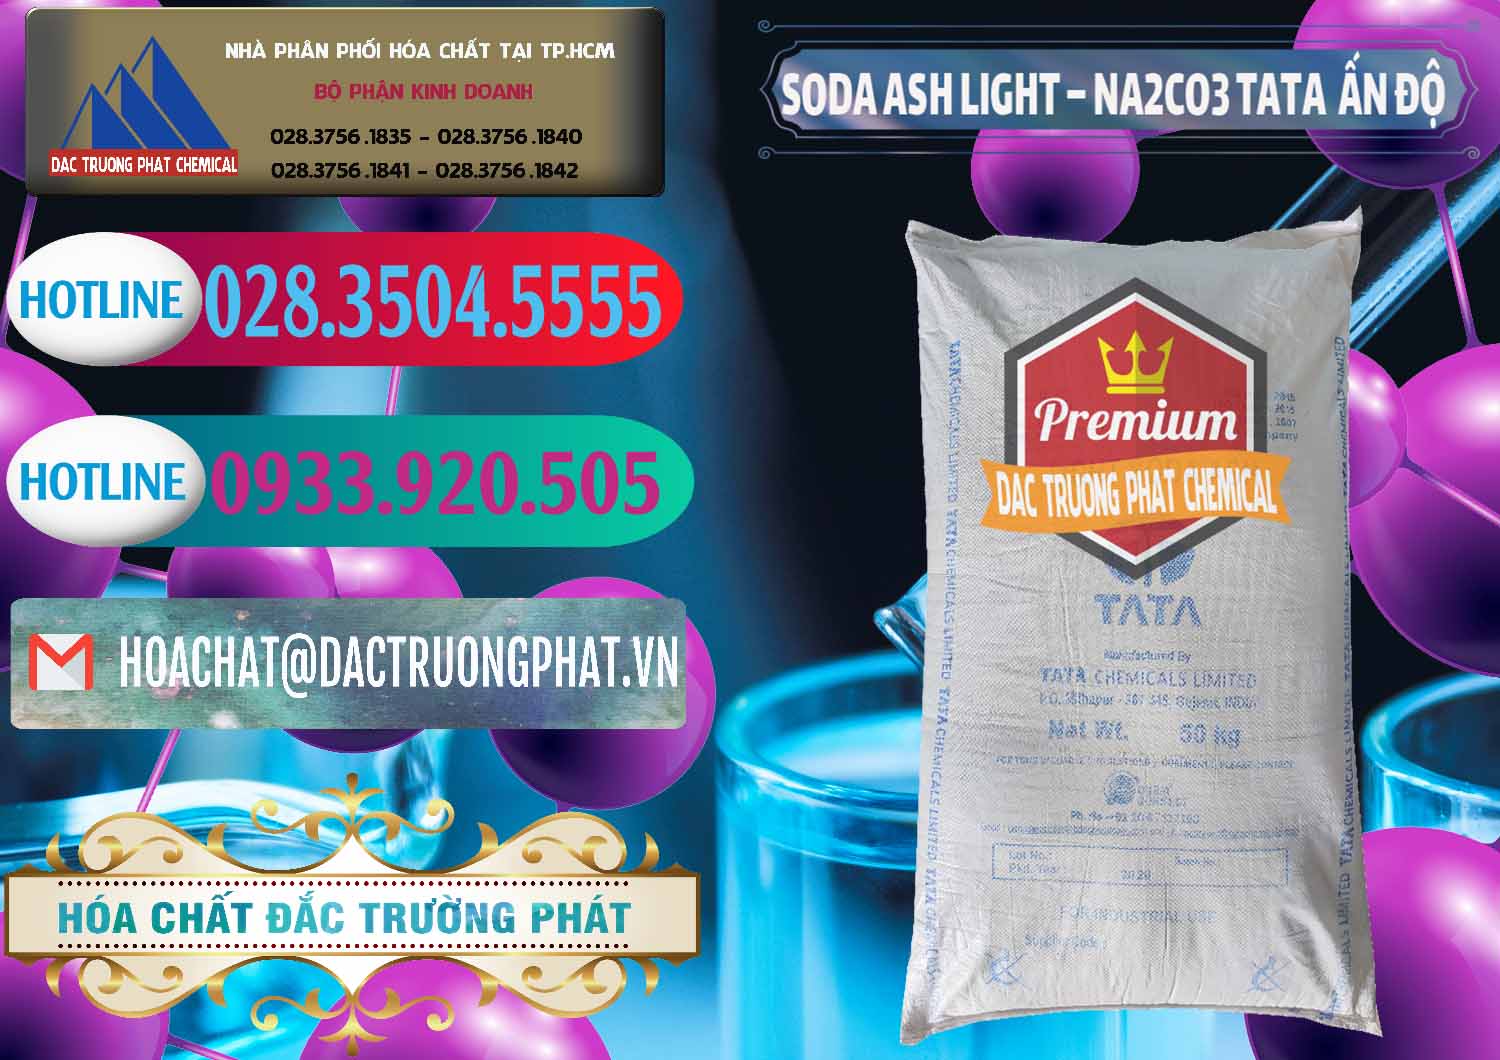 Cty chuyên bán & phân phối Soda Ash Light - NA2CO3 TATA Ấn Độ India - 0132 - Cty phân phối _ kinh doanh hóa chất tại TP.HCM - truongphat.vn